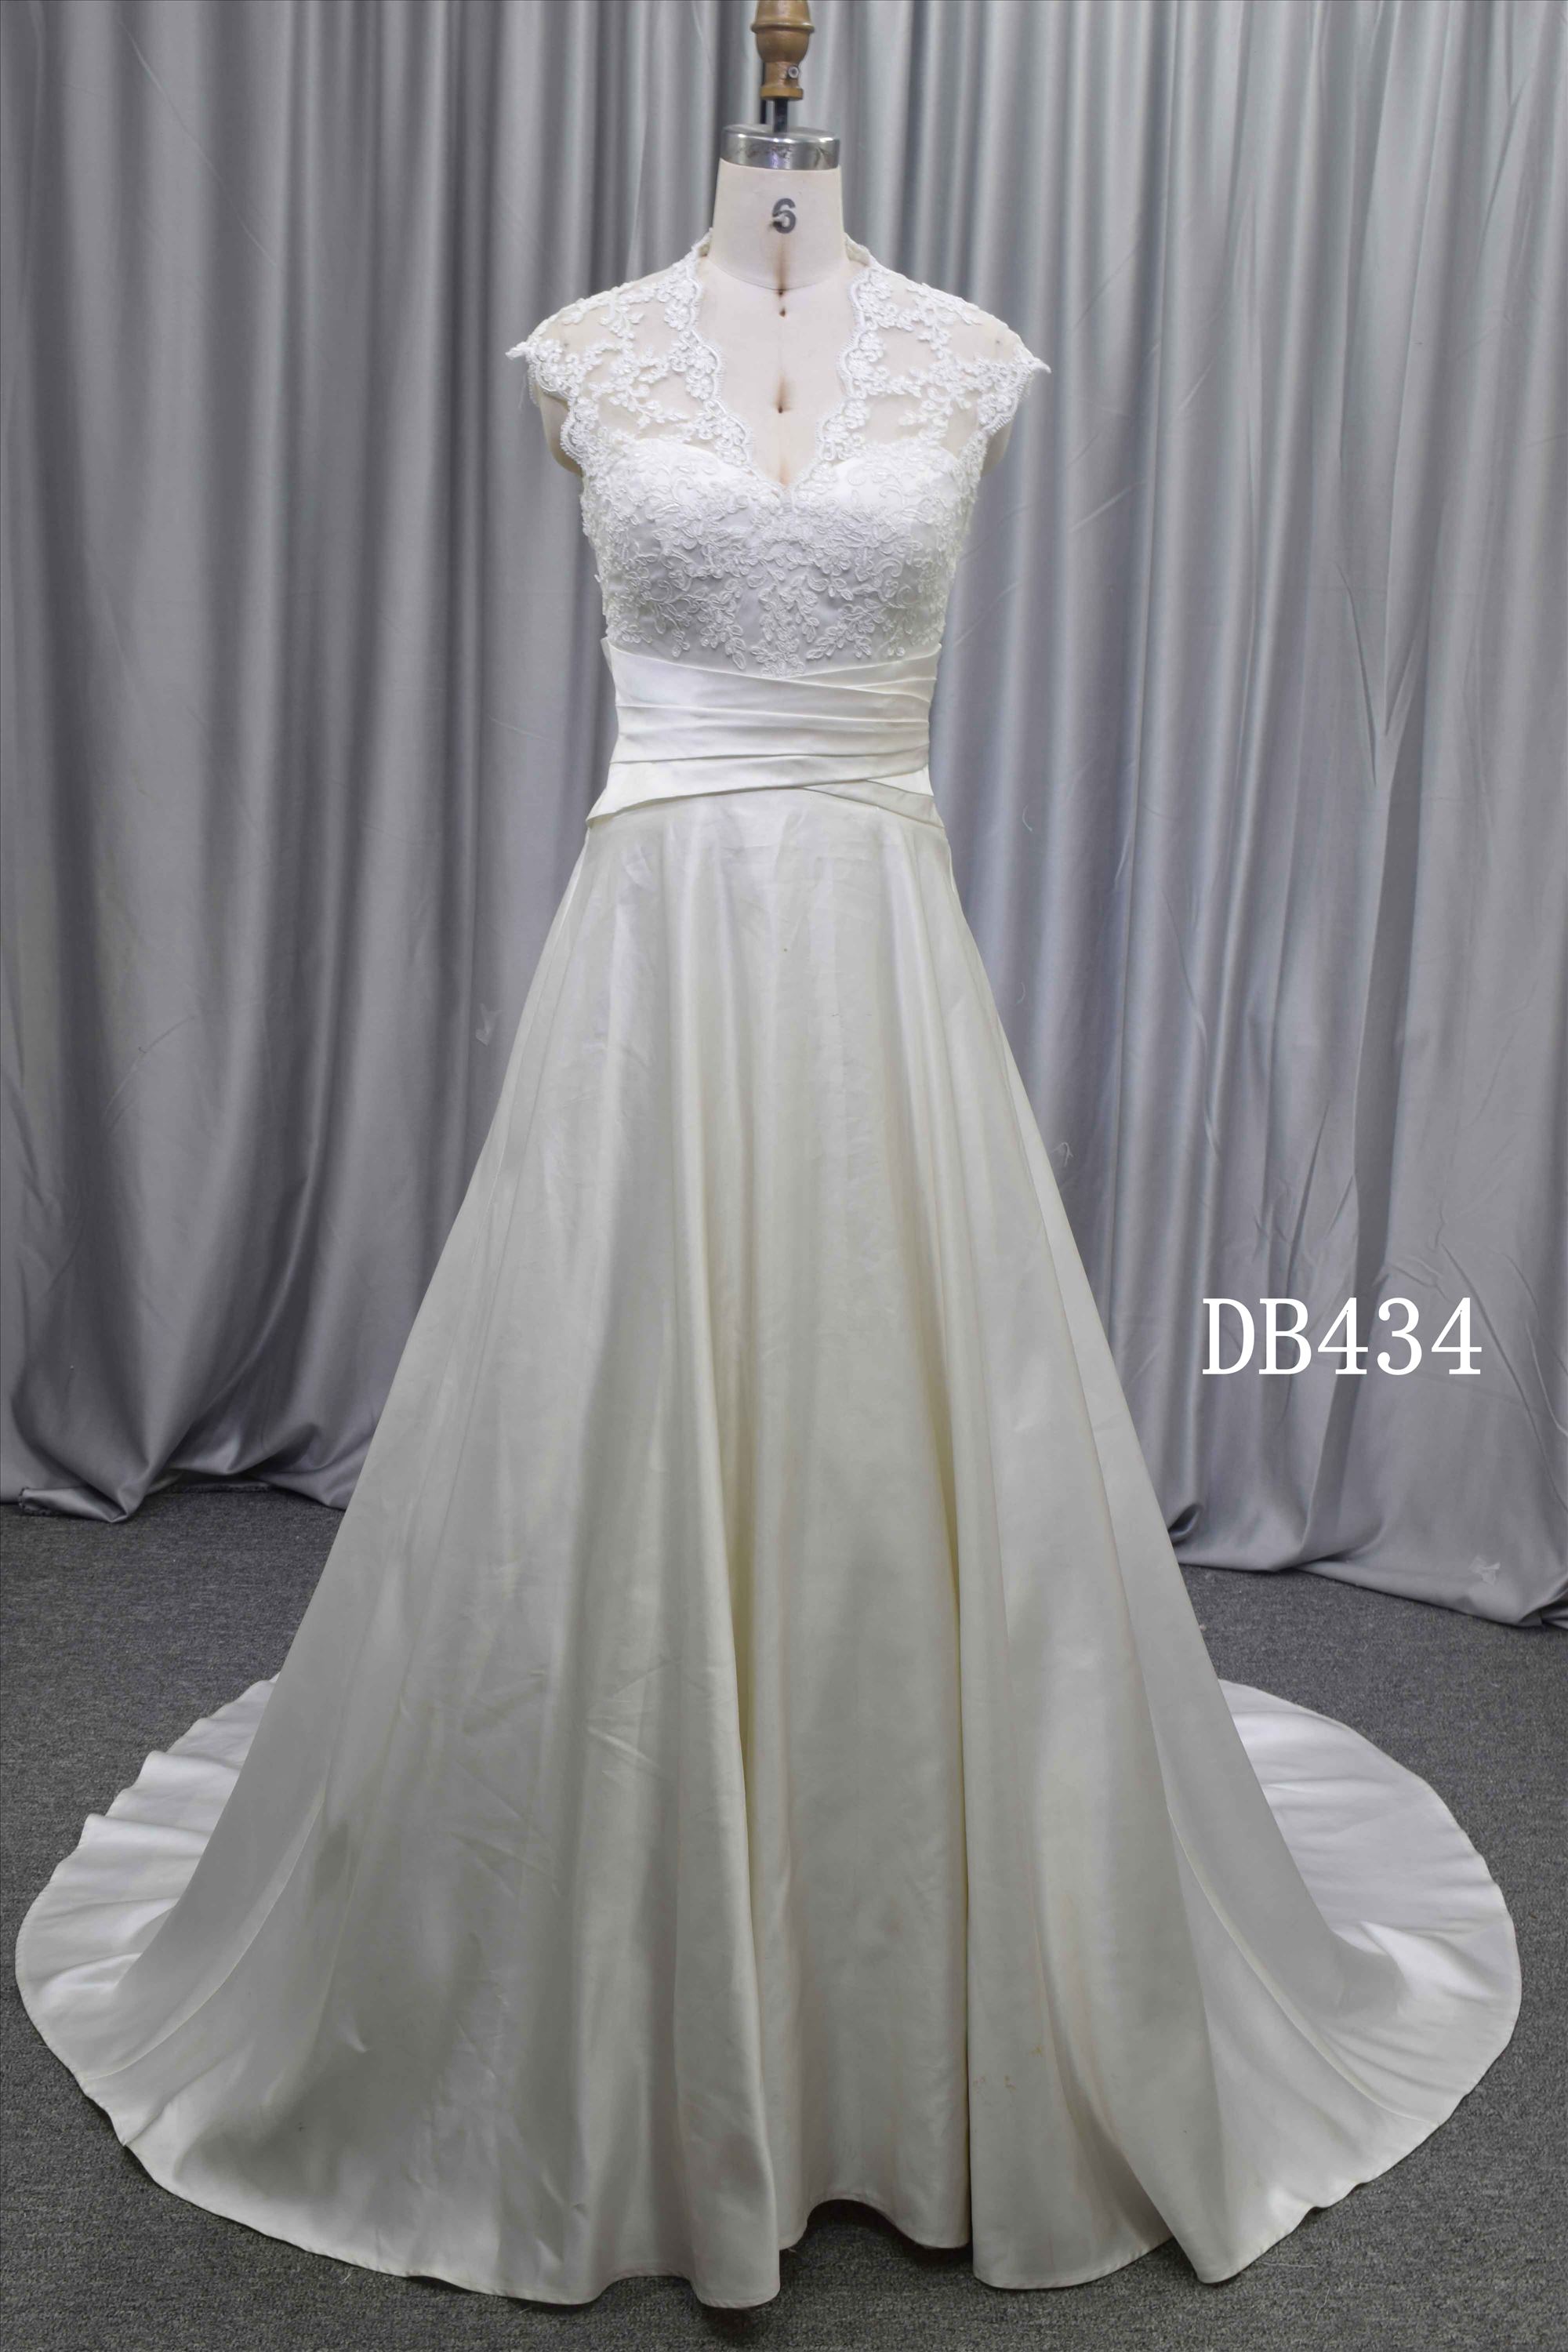 Sheath chiffon elegant wedding dress lace illusion straps bridal gown